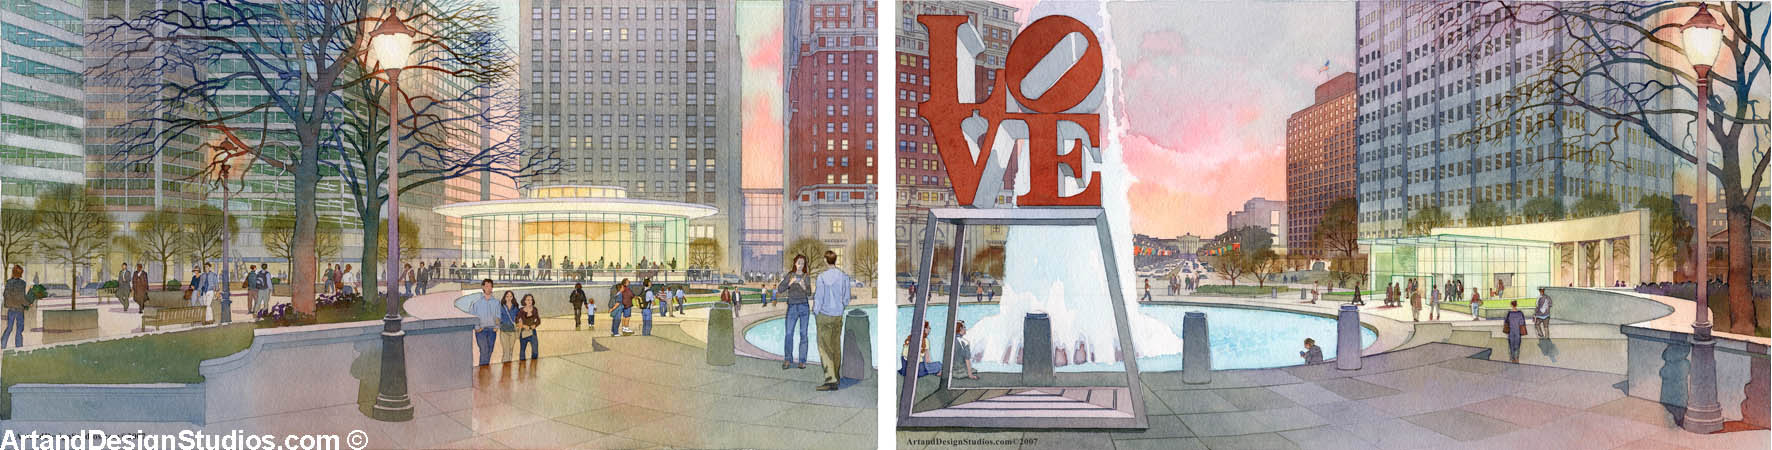 Architectural rendering of Philadelphia's Love Plaza 